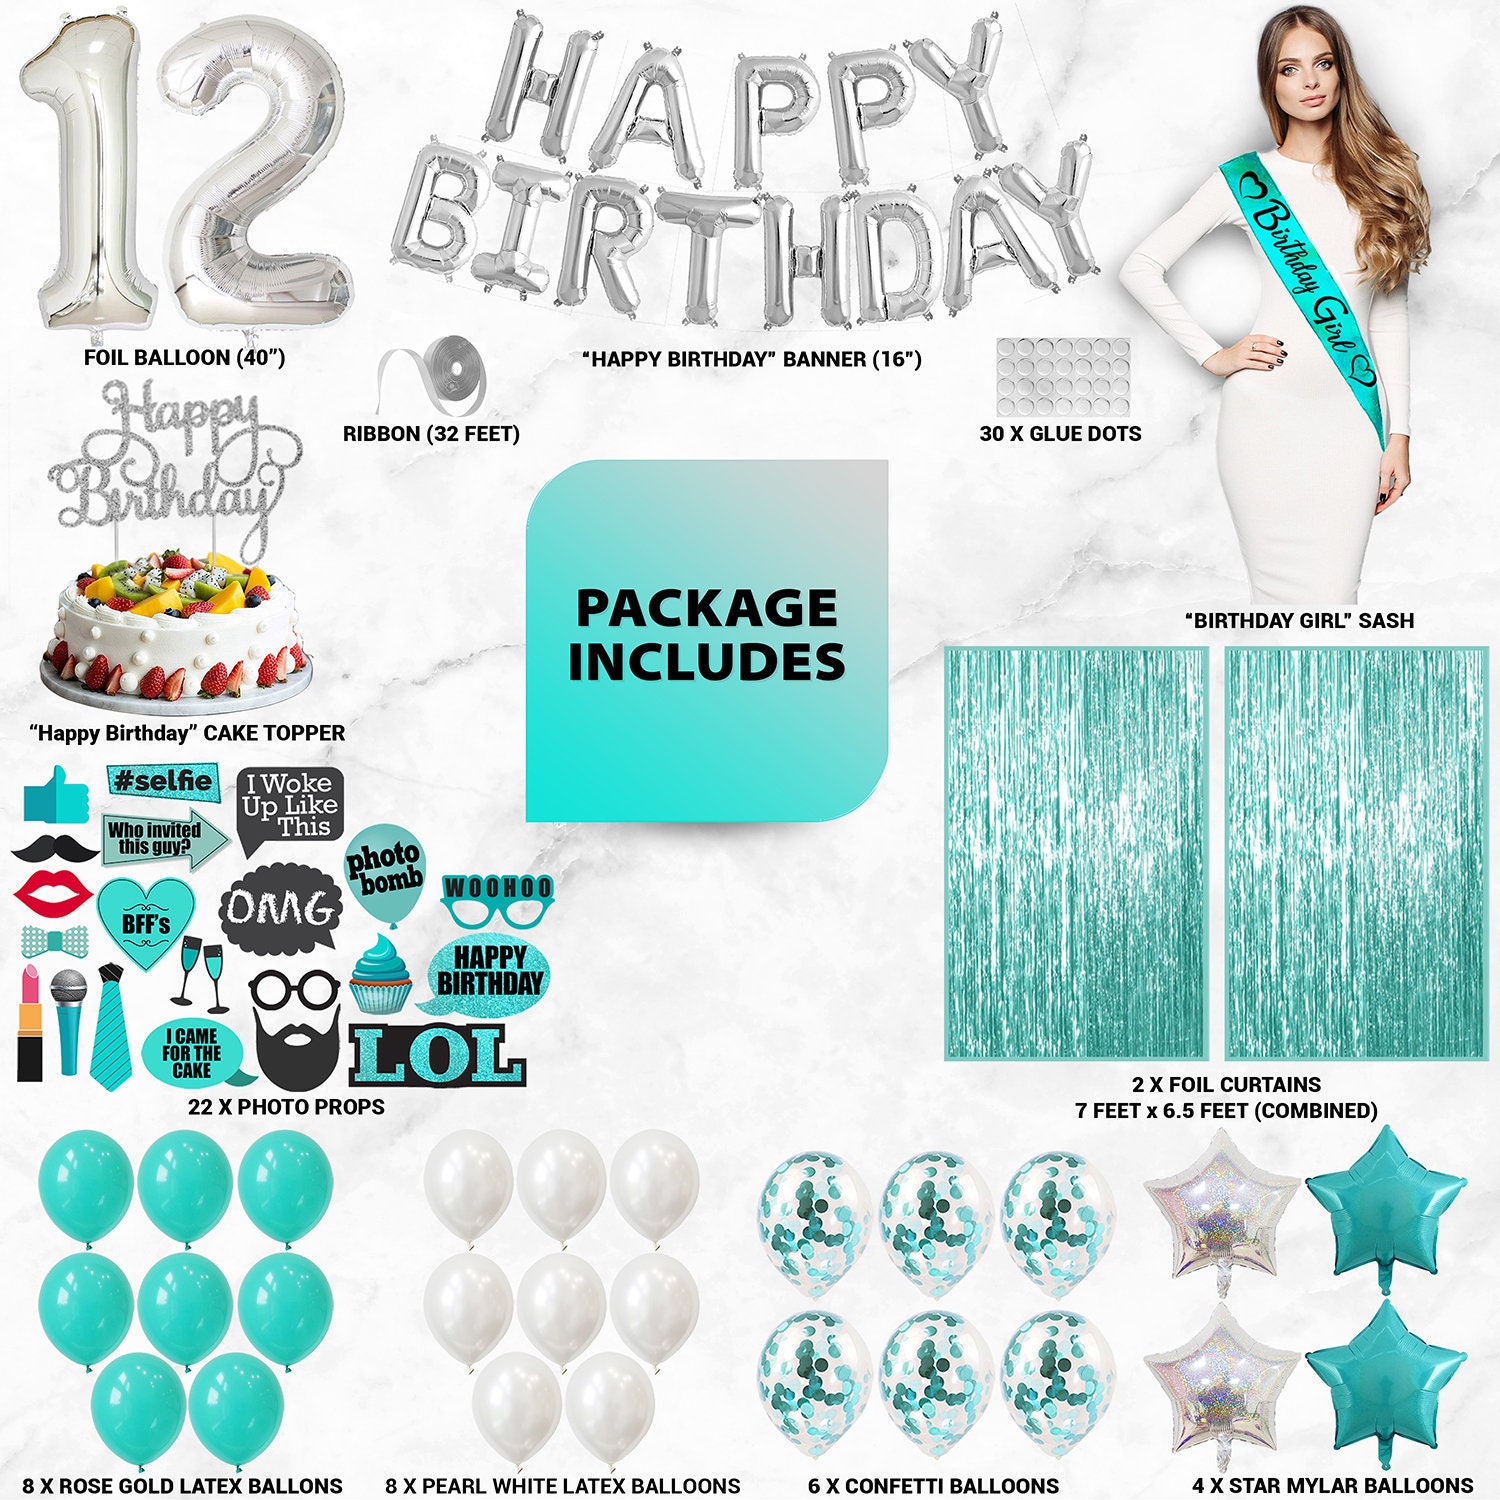  Qotuty Regalos de cumpleaños número 12 para niñas, los mejores regalos  para niñas de 12 años, regalos para niñas de 12 años, decoraciones de  fiesta de cumpleaños de 12 años, ideas